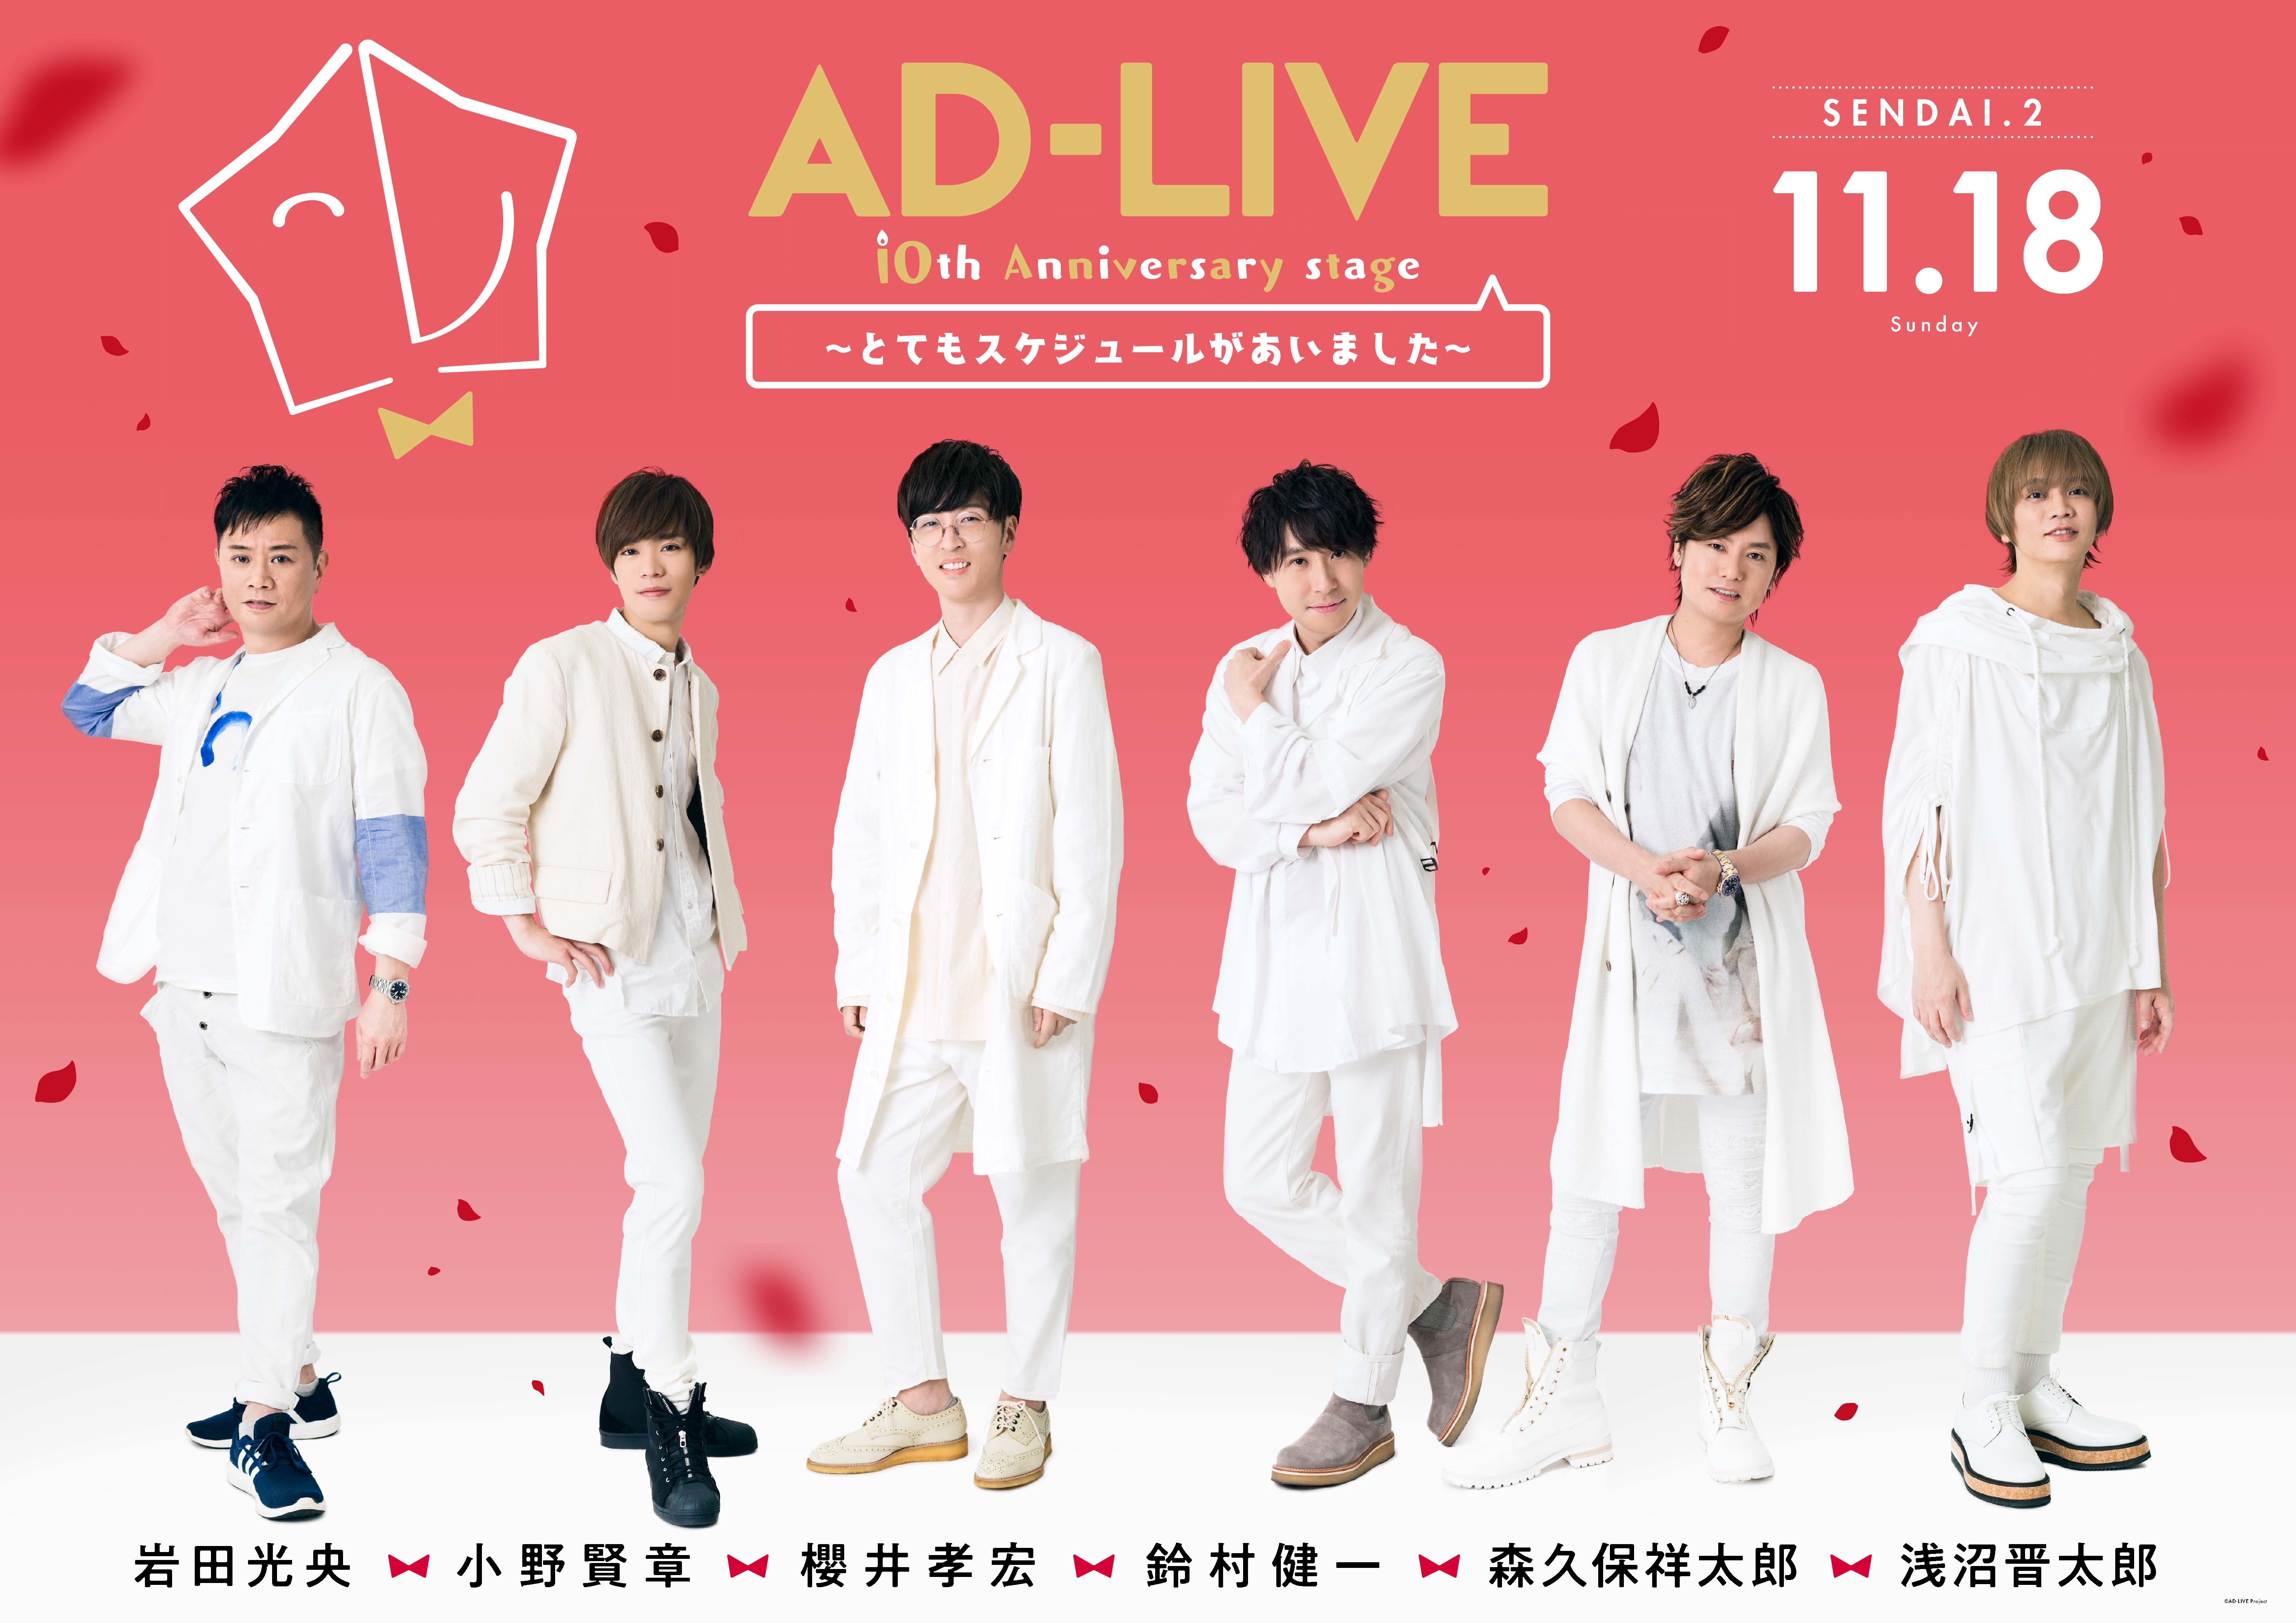 鈴村健一ら声優による舞台劇『AD-LIVE 2018』『AD-LIVE 10th 